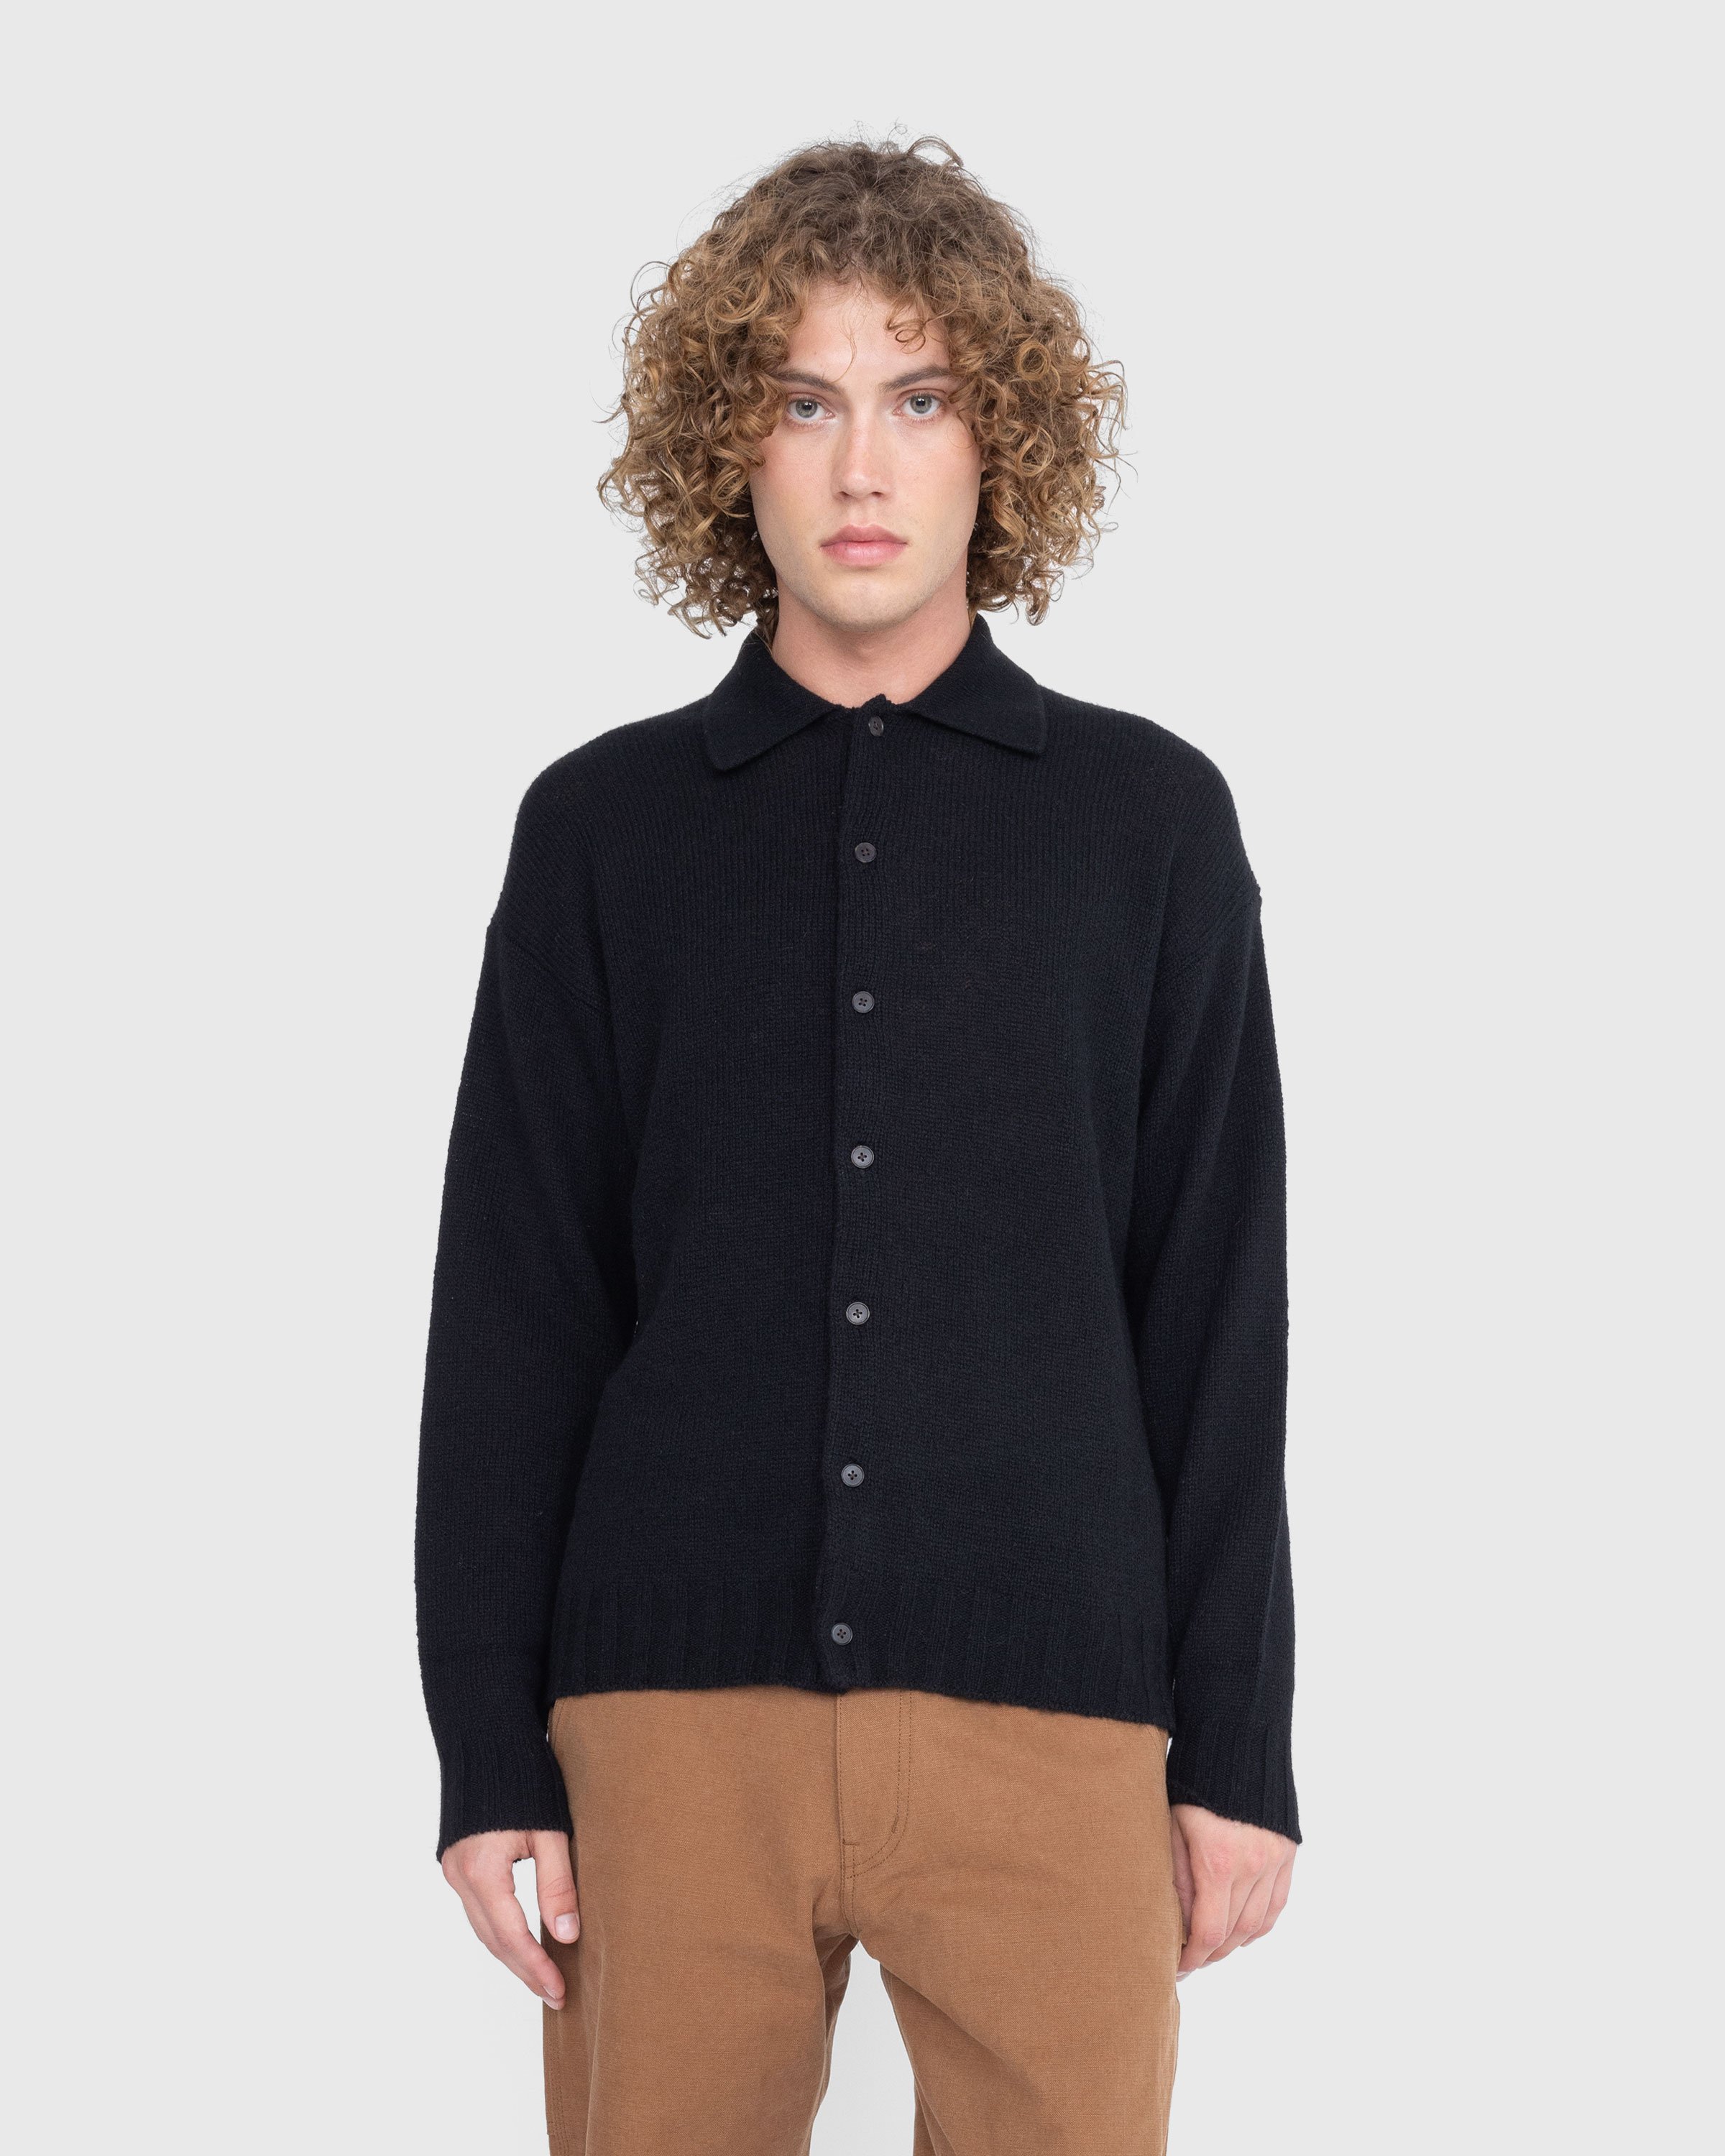 Auralee - Shetland Wool Cashmere Knit Cardigan Black - Clothing - Black - Image 2